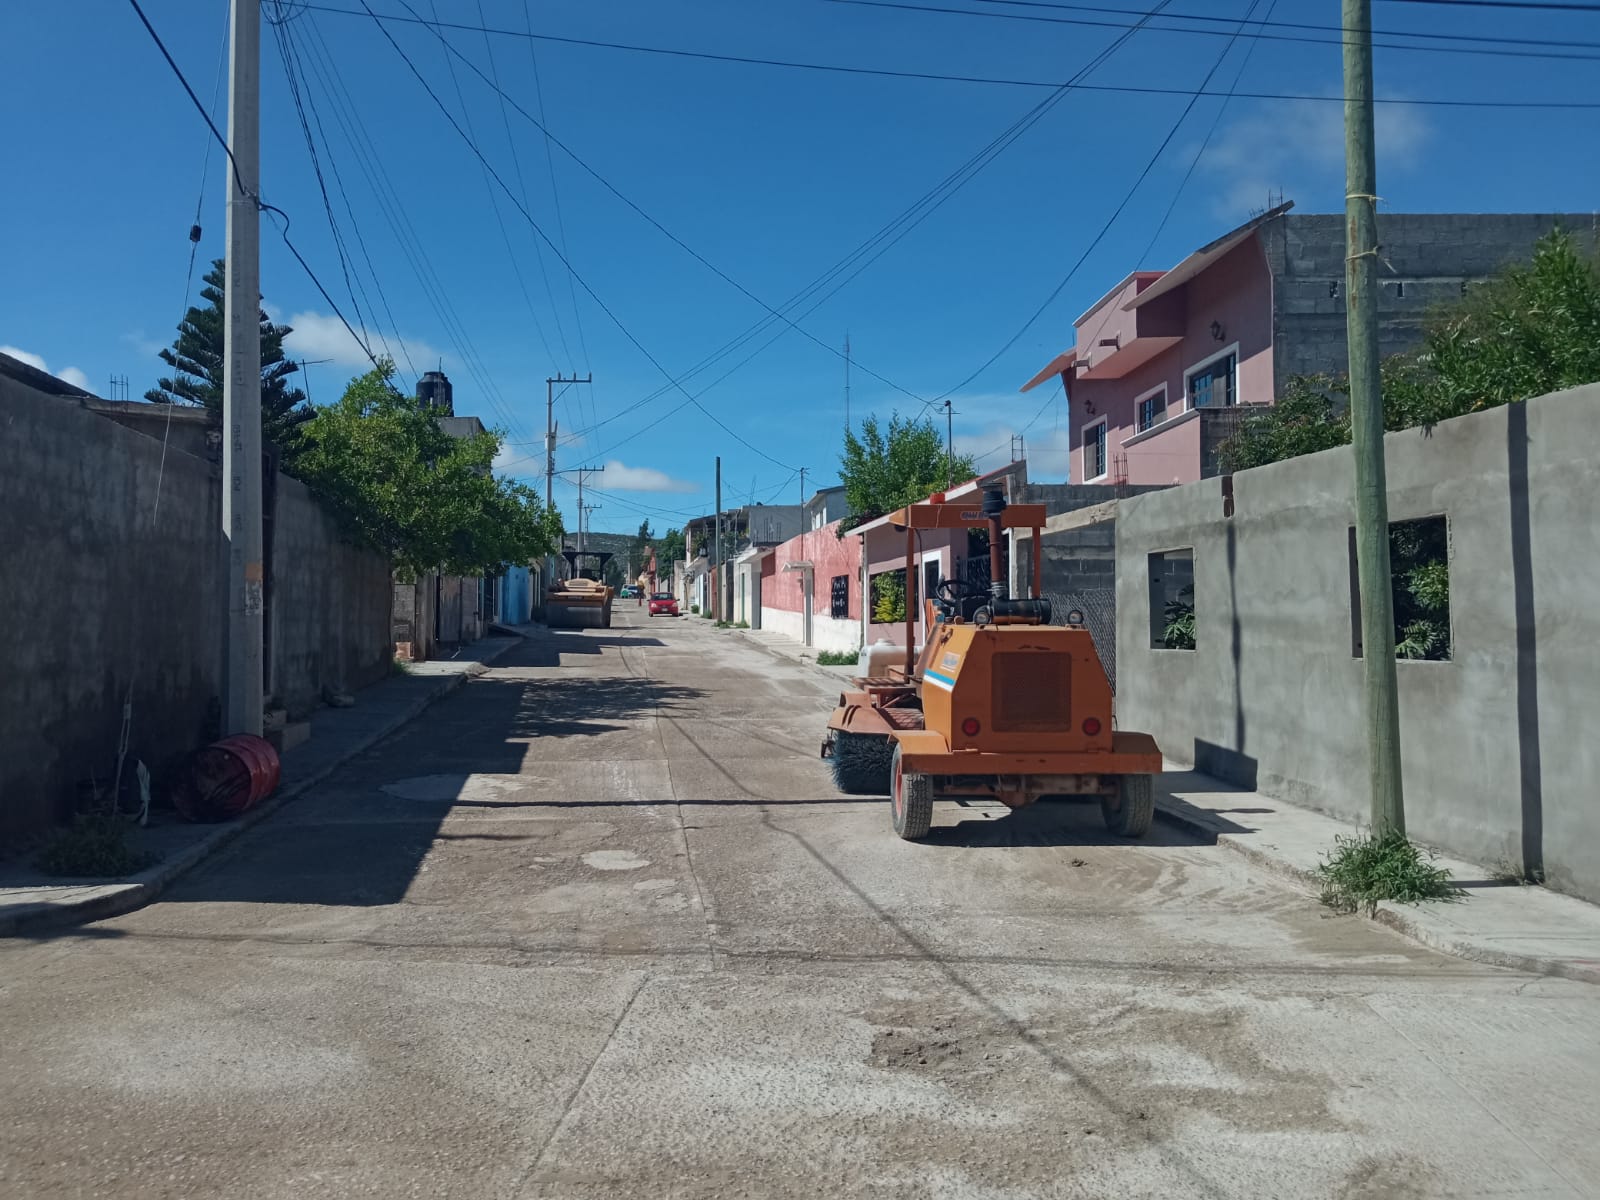 Arranca la rehabilitación asfáltica en el barrio ‘Cerro del Aire’